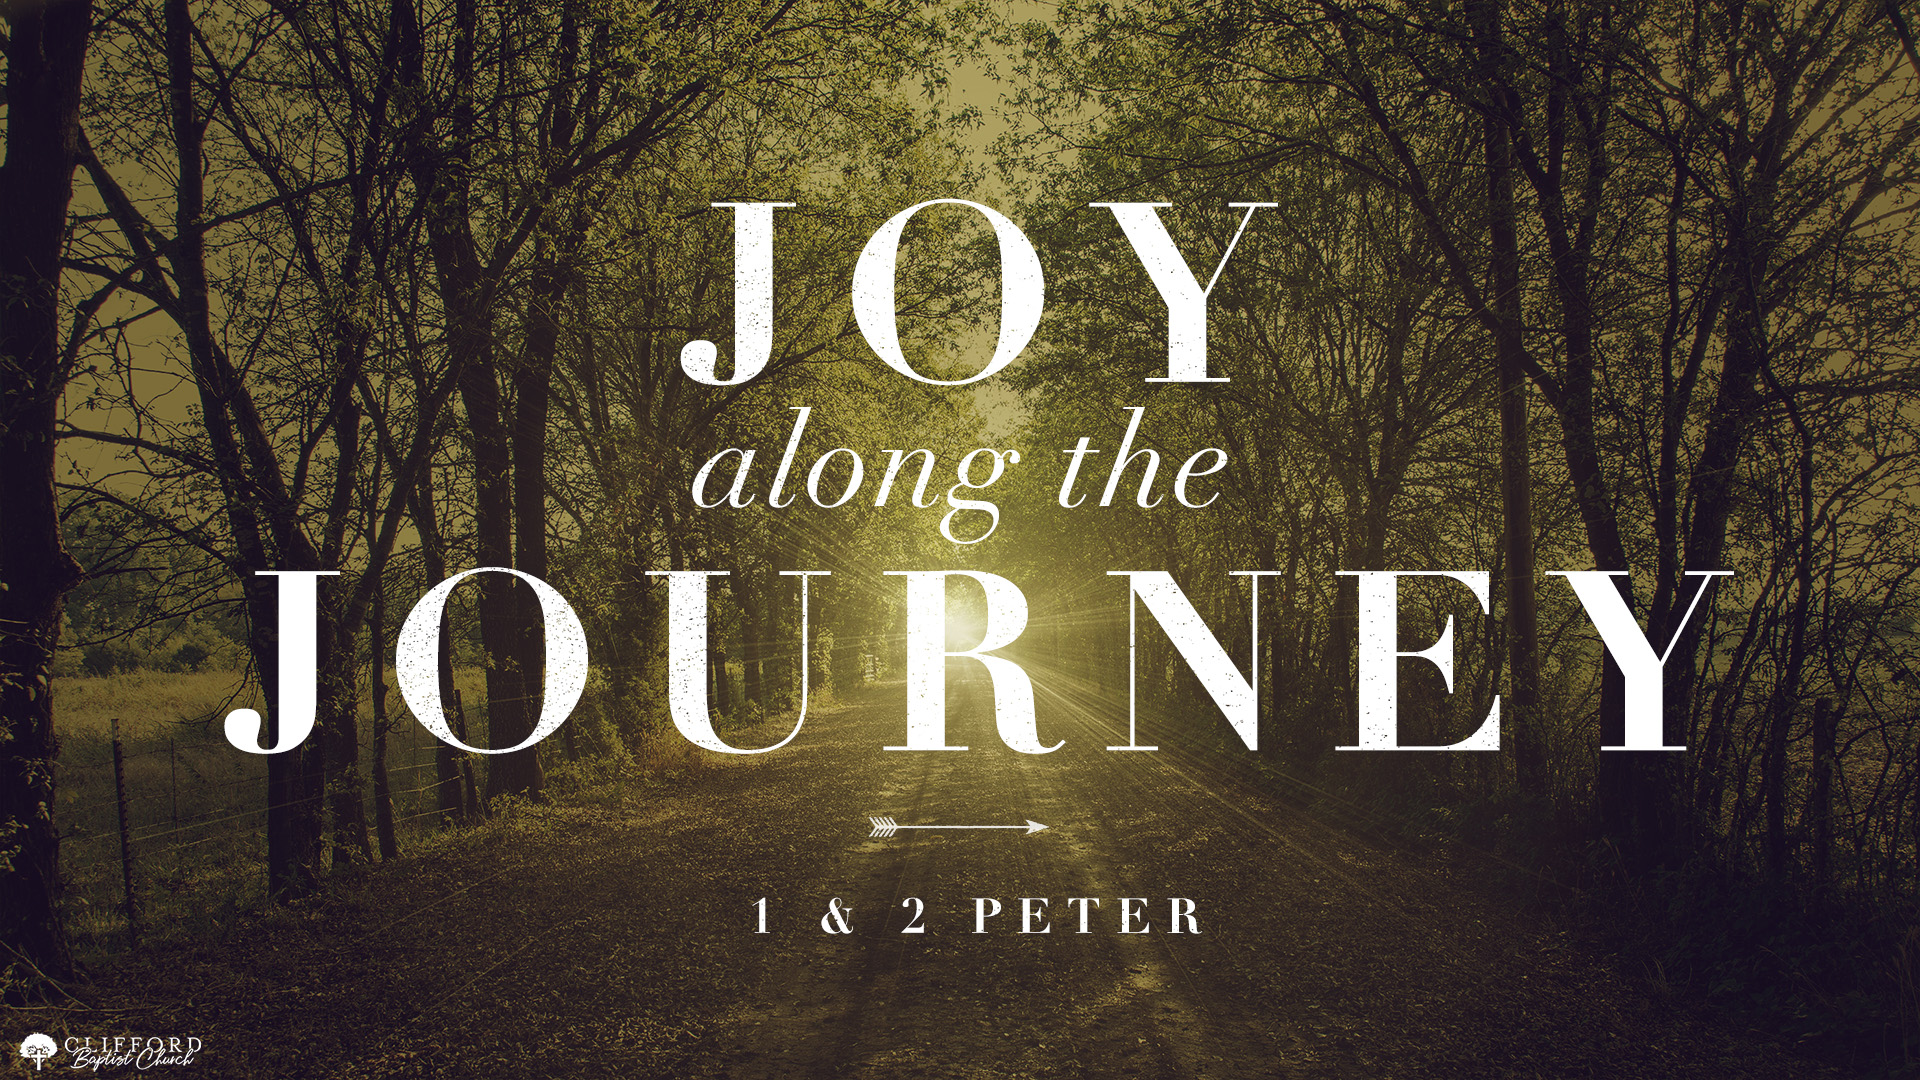 Joy along the Journey